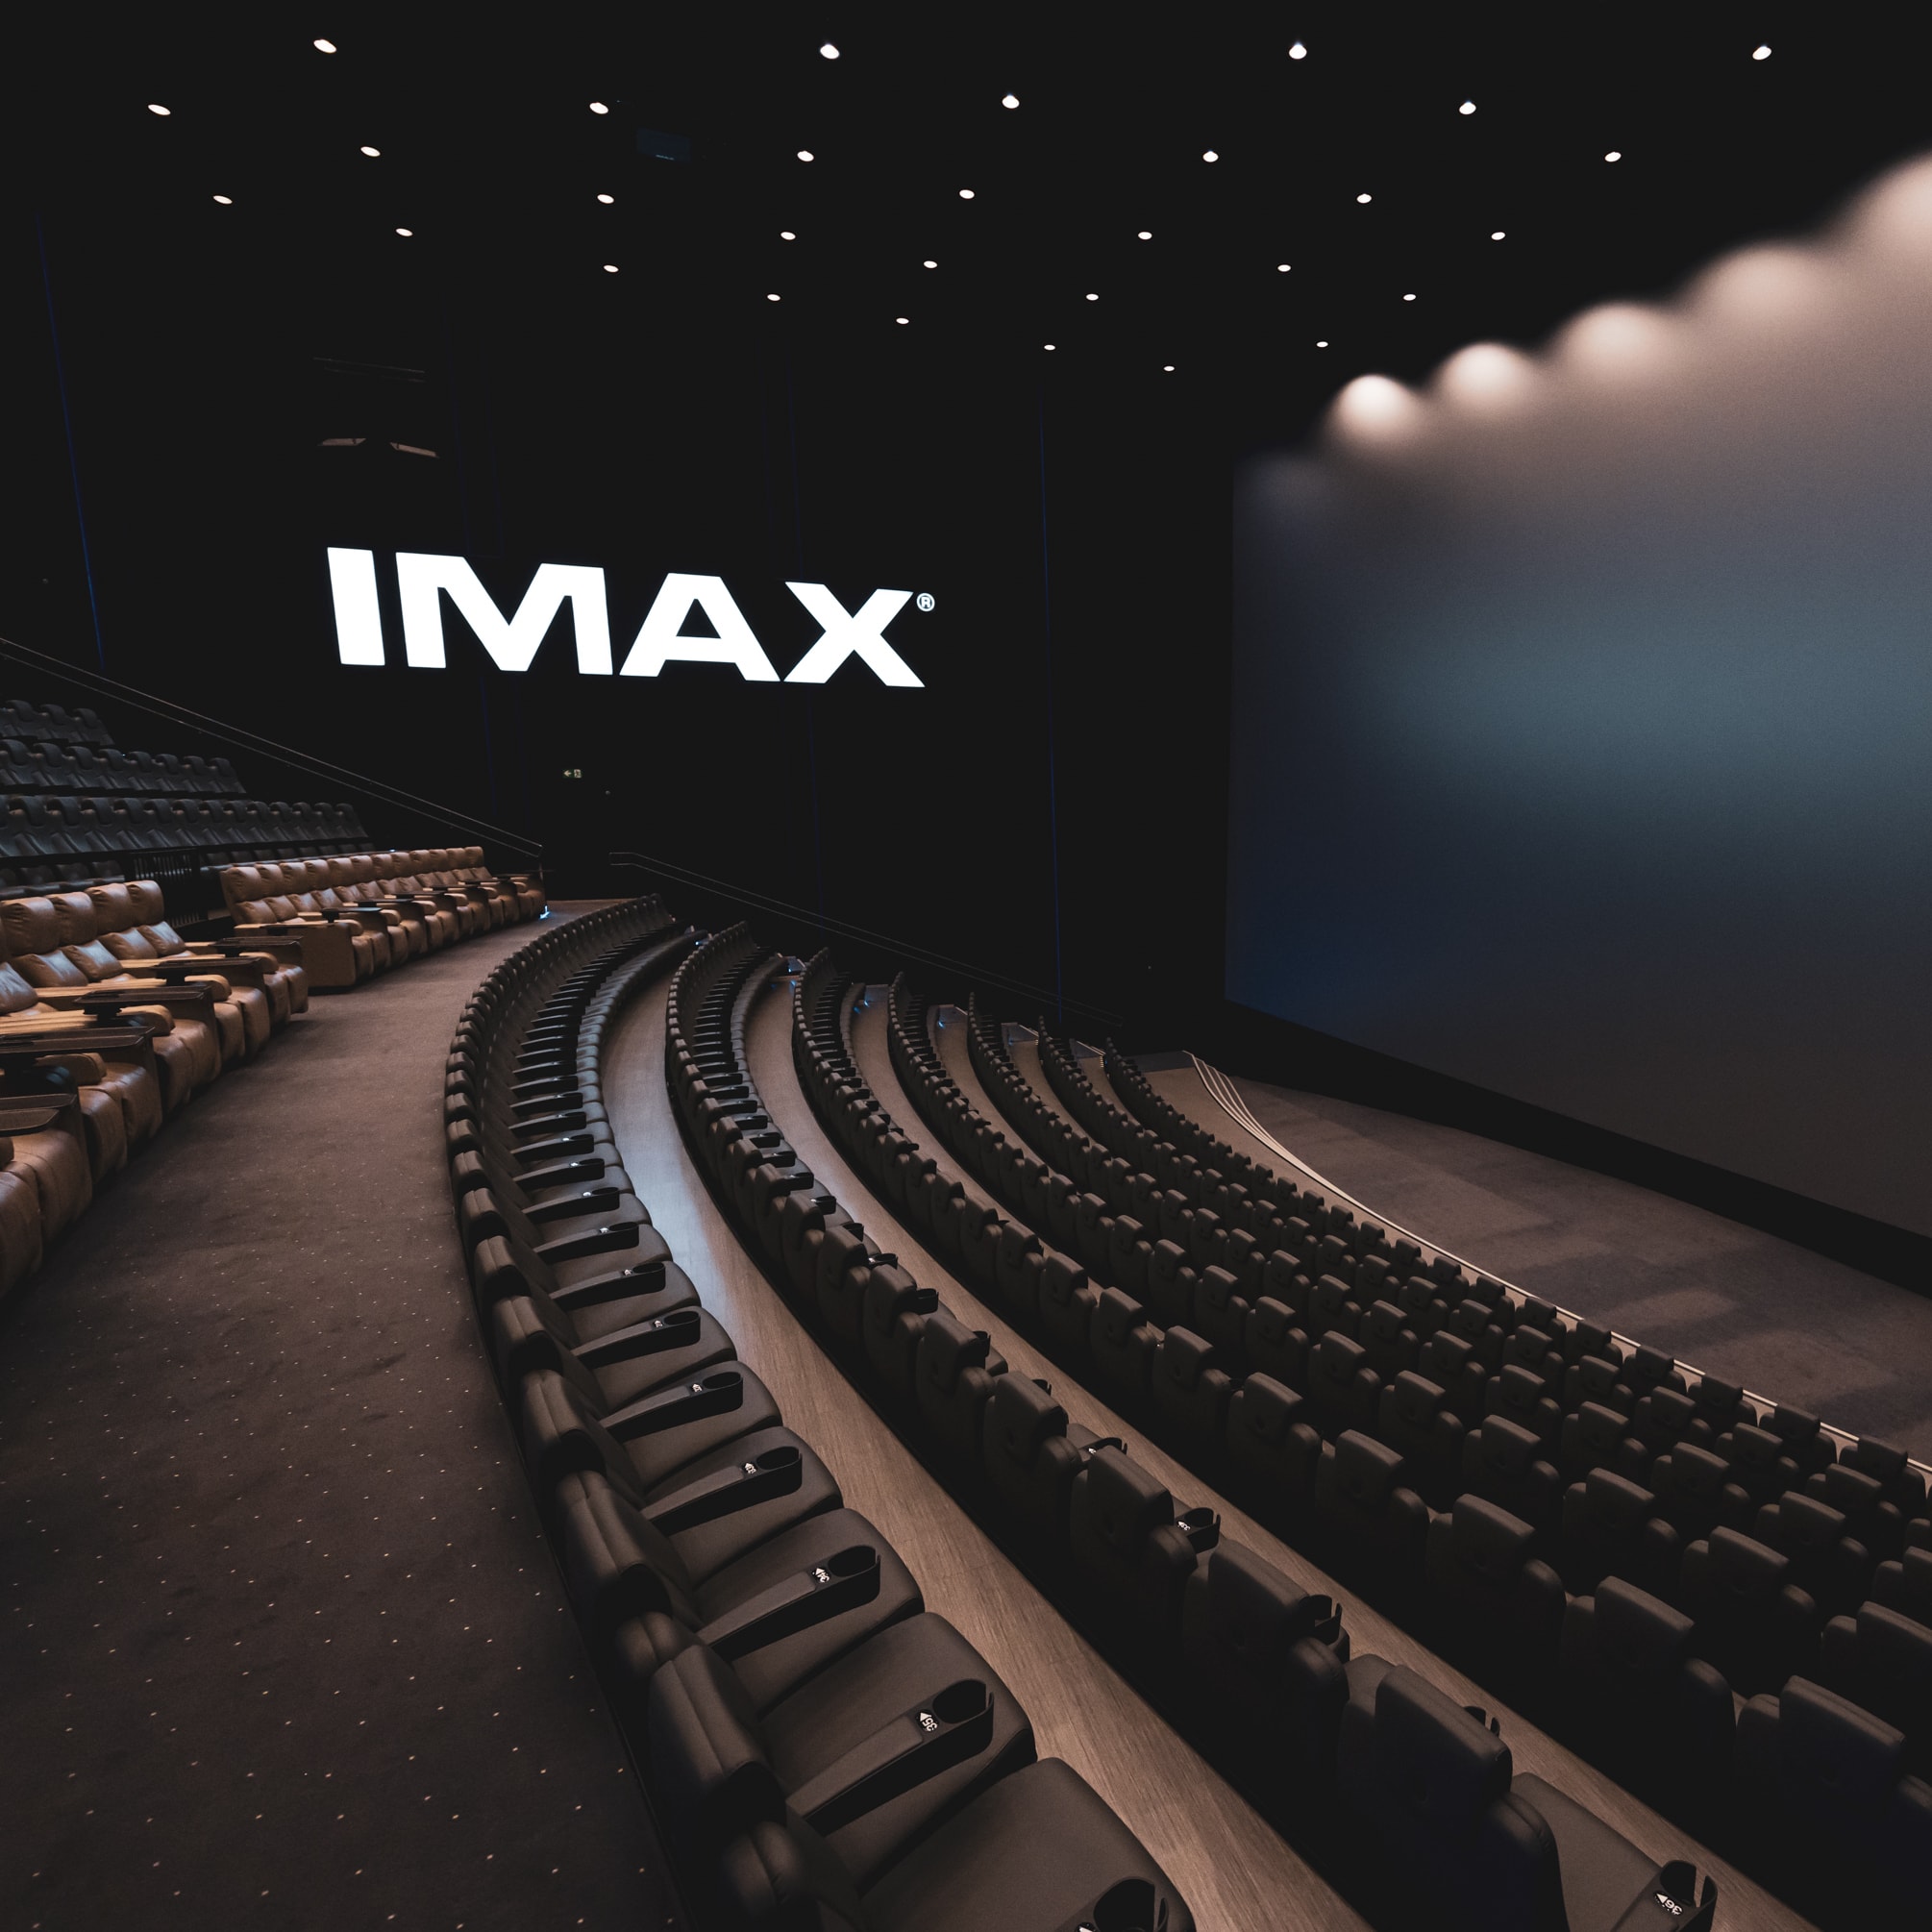 Opplev IMAX, iSense, ScreenX og LUXE hos ODEON Kino (8 av 11)